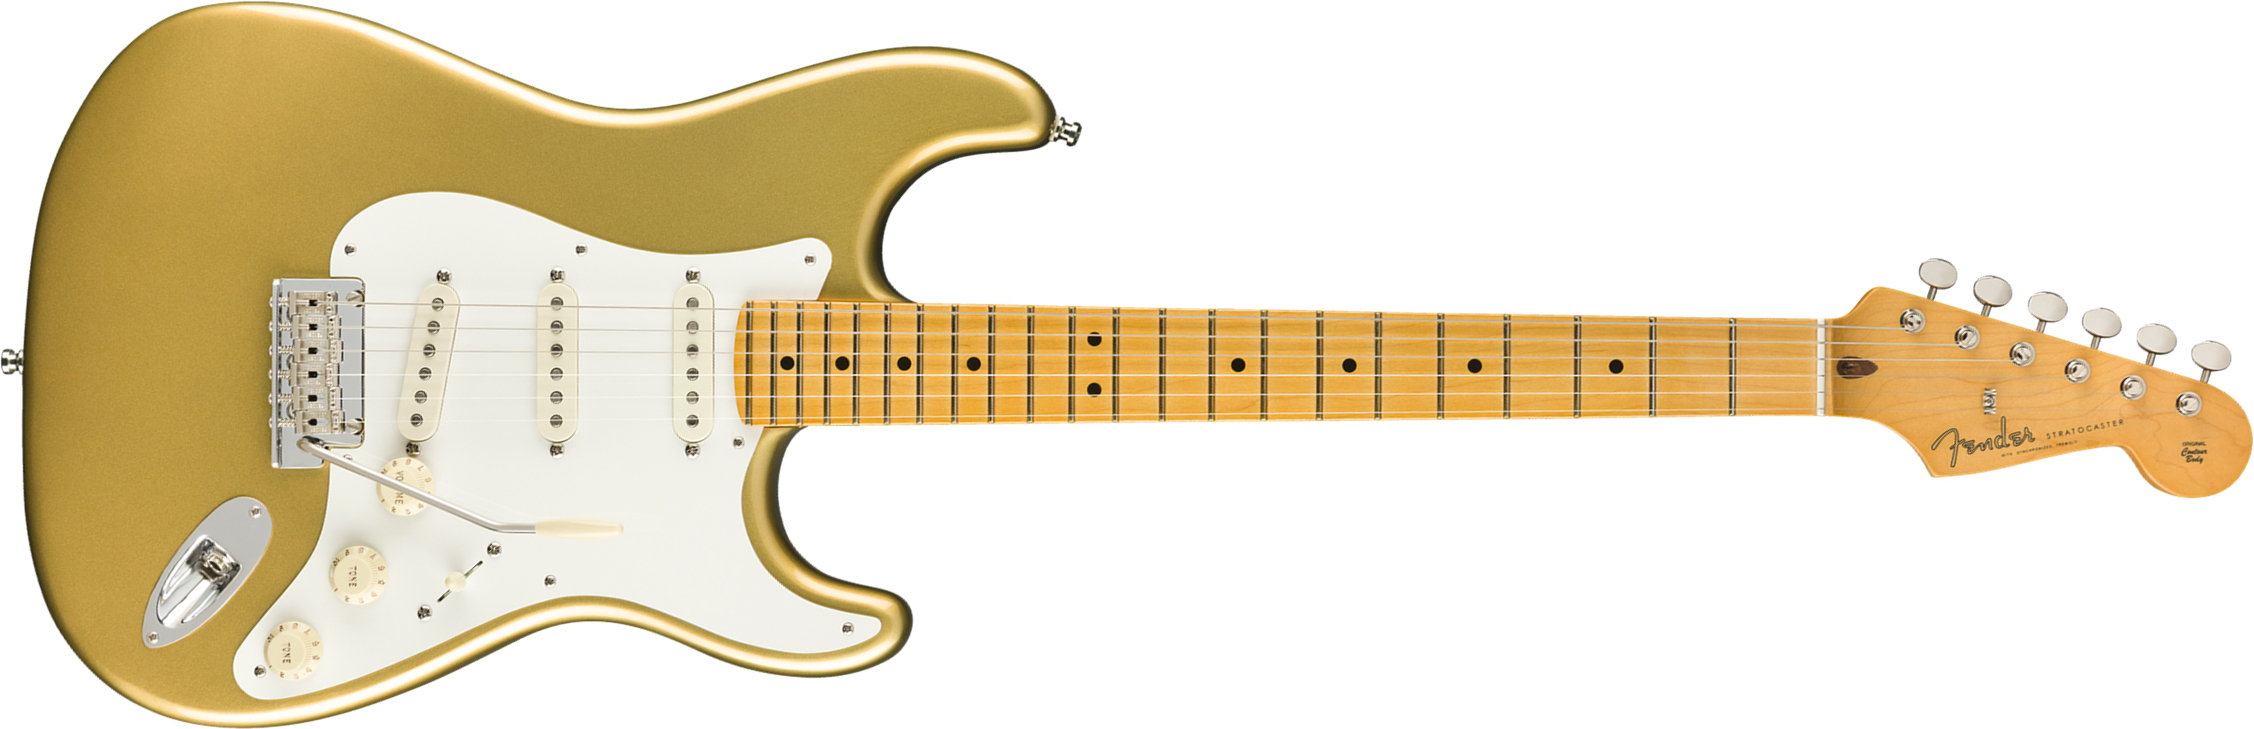 Fender Strat Lincoln Brewster Usa Signature Mn - Aztec Gold - Elektrische gitaar in Str-vorm - Main picture